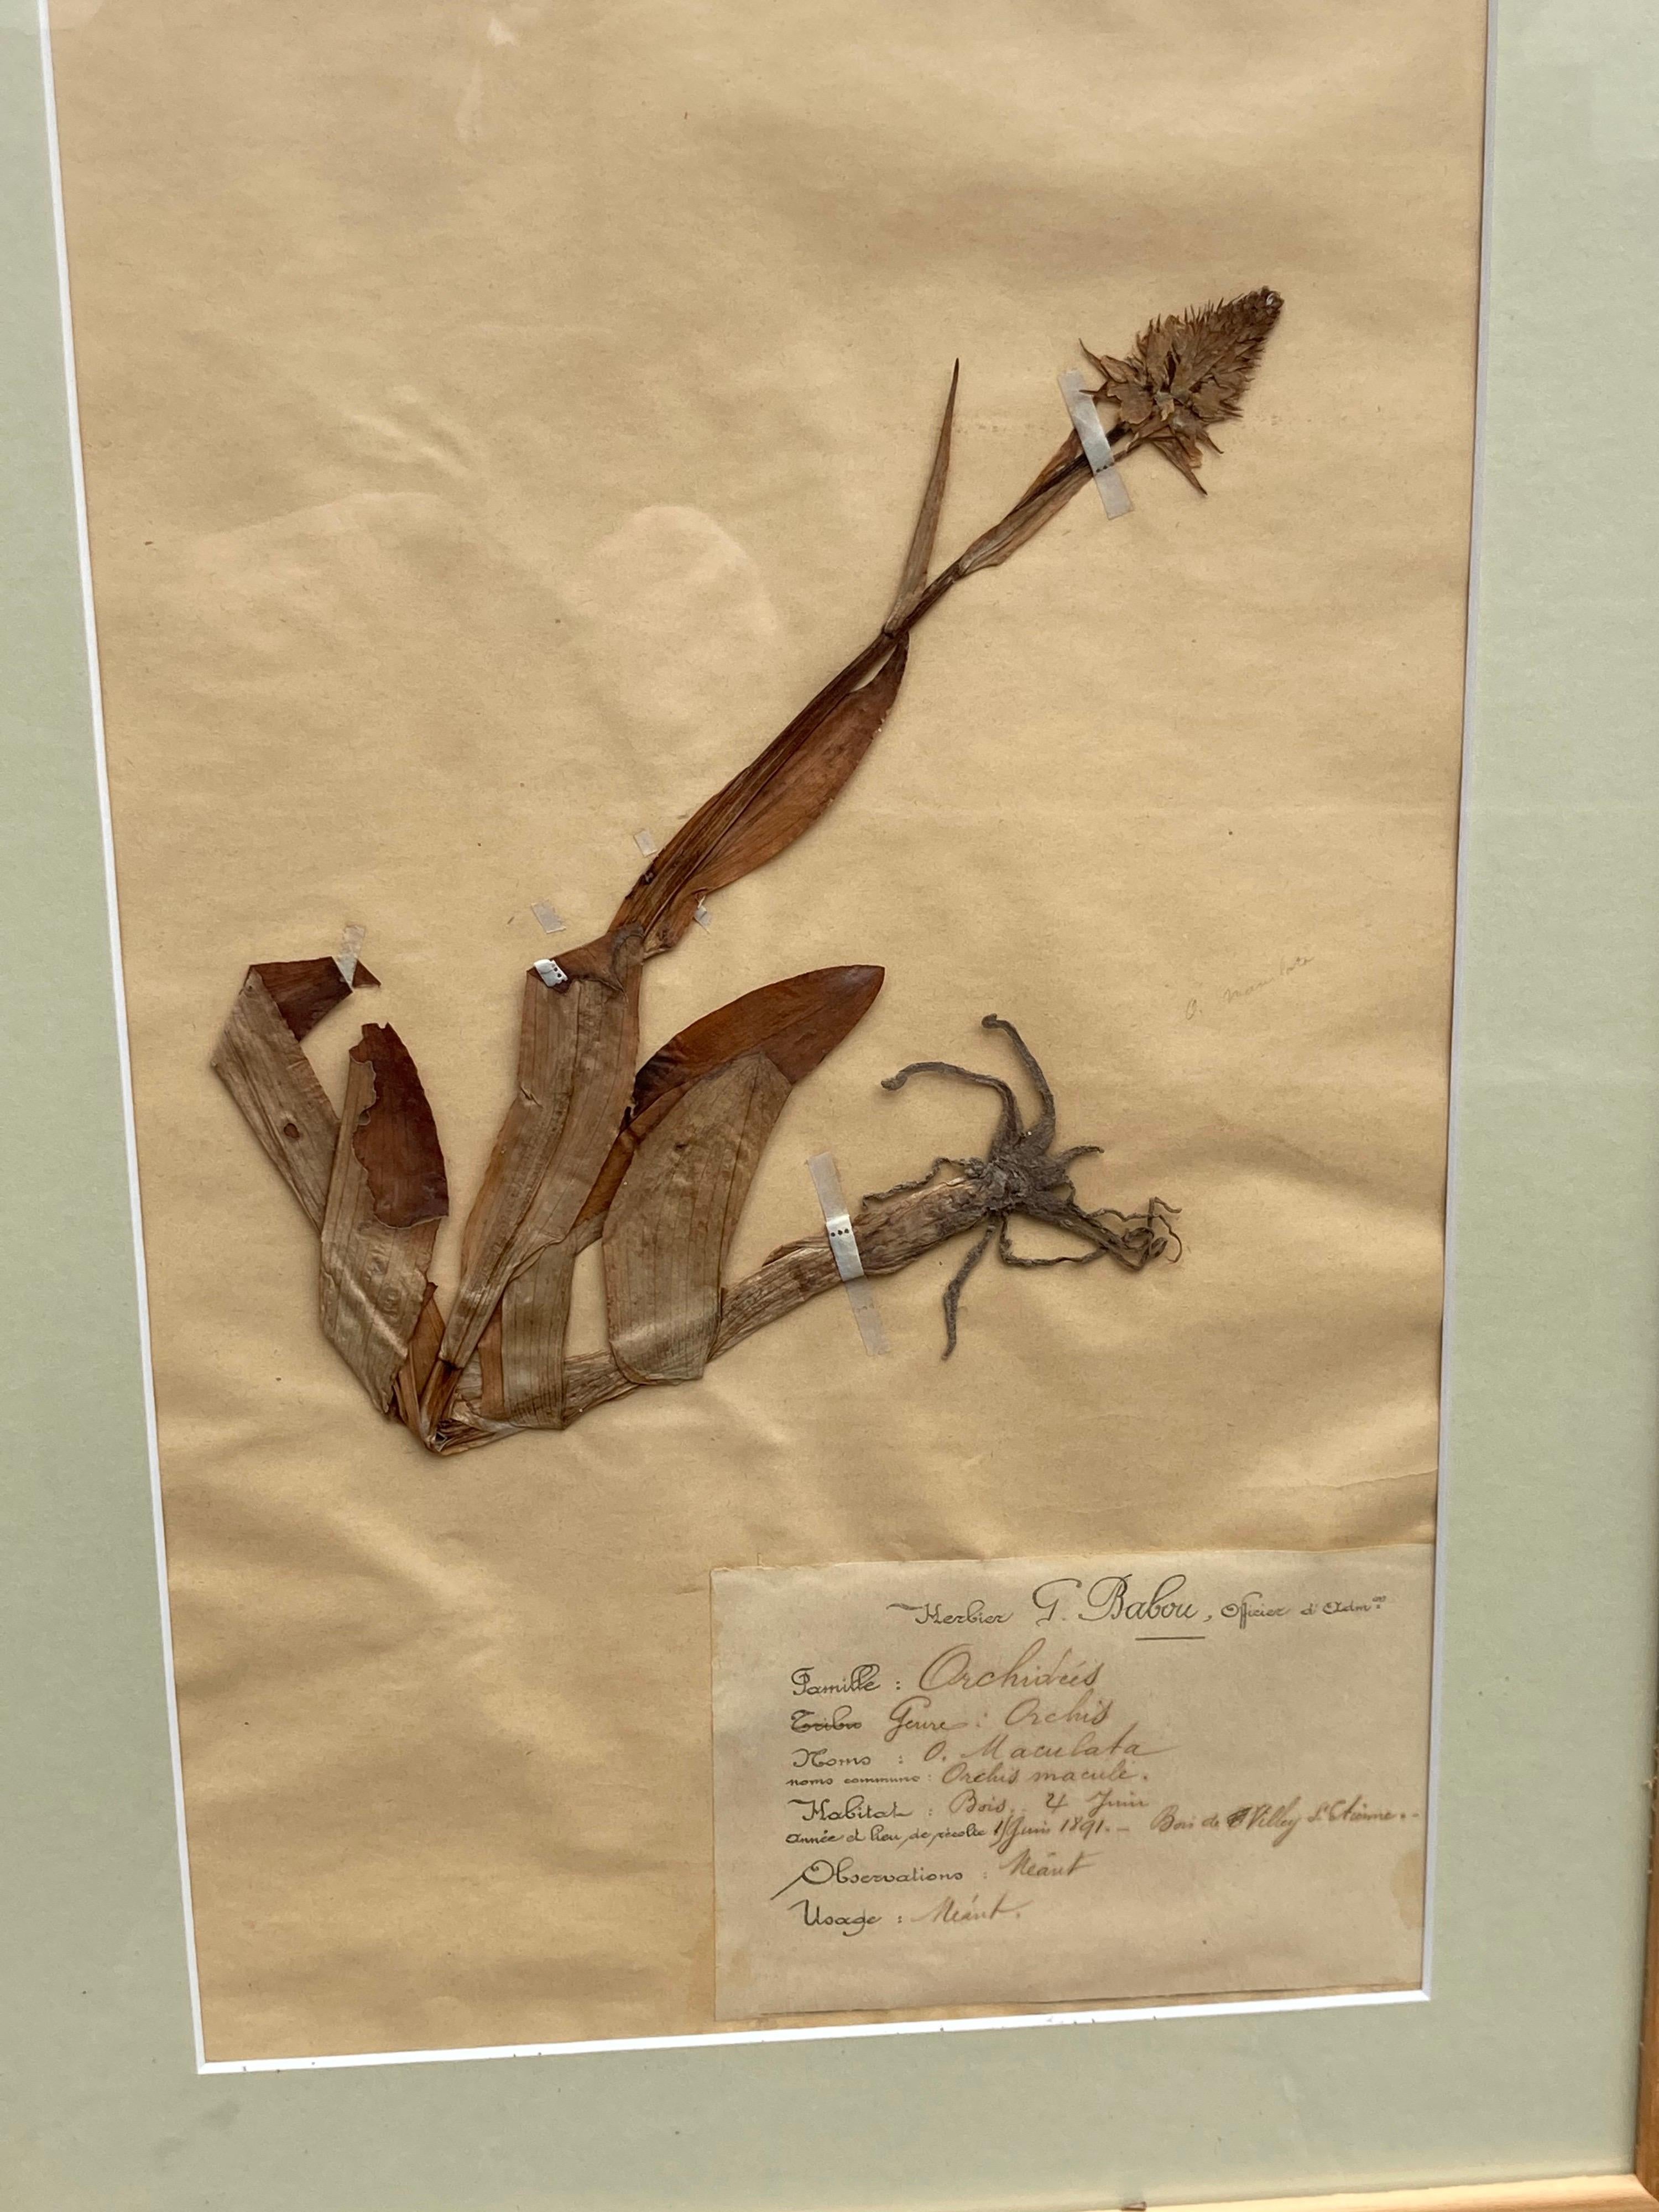 französische getrocknete Pflanzenproben aus dem 19. Jahrhundert... signiert von G. Babou, datiert und akribisch katalogisiert, einschließlich des Standorts in Frankreich.... ein wunderbarer Satz von 15.